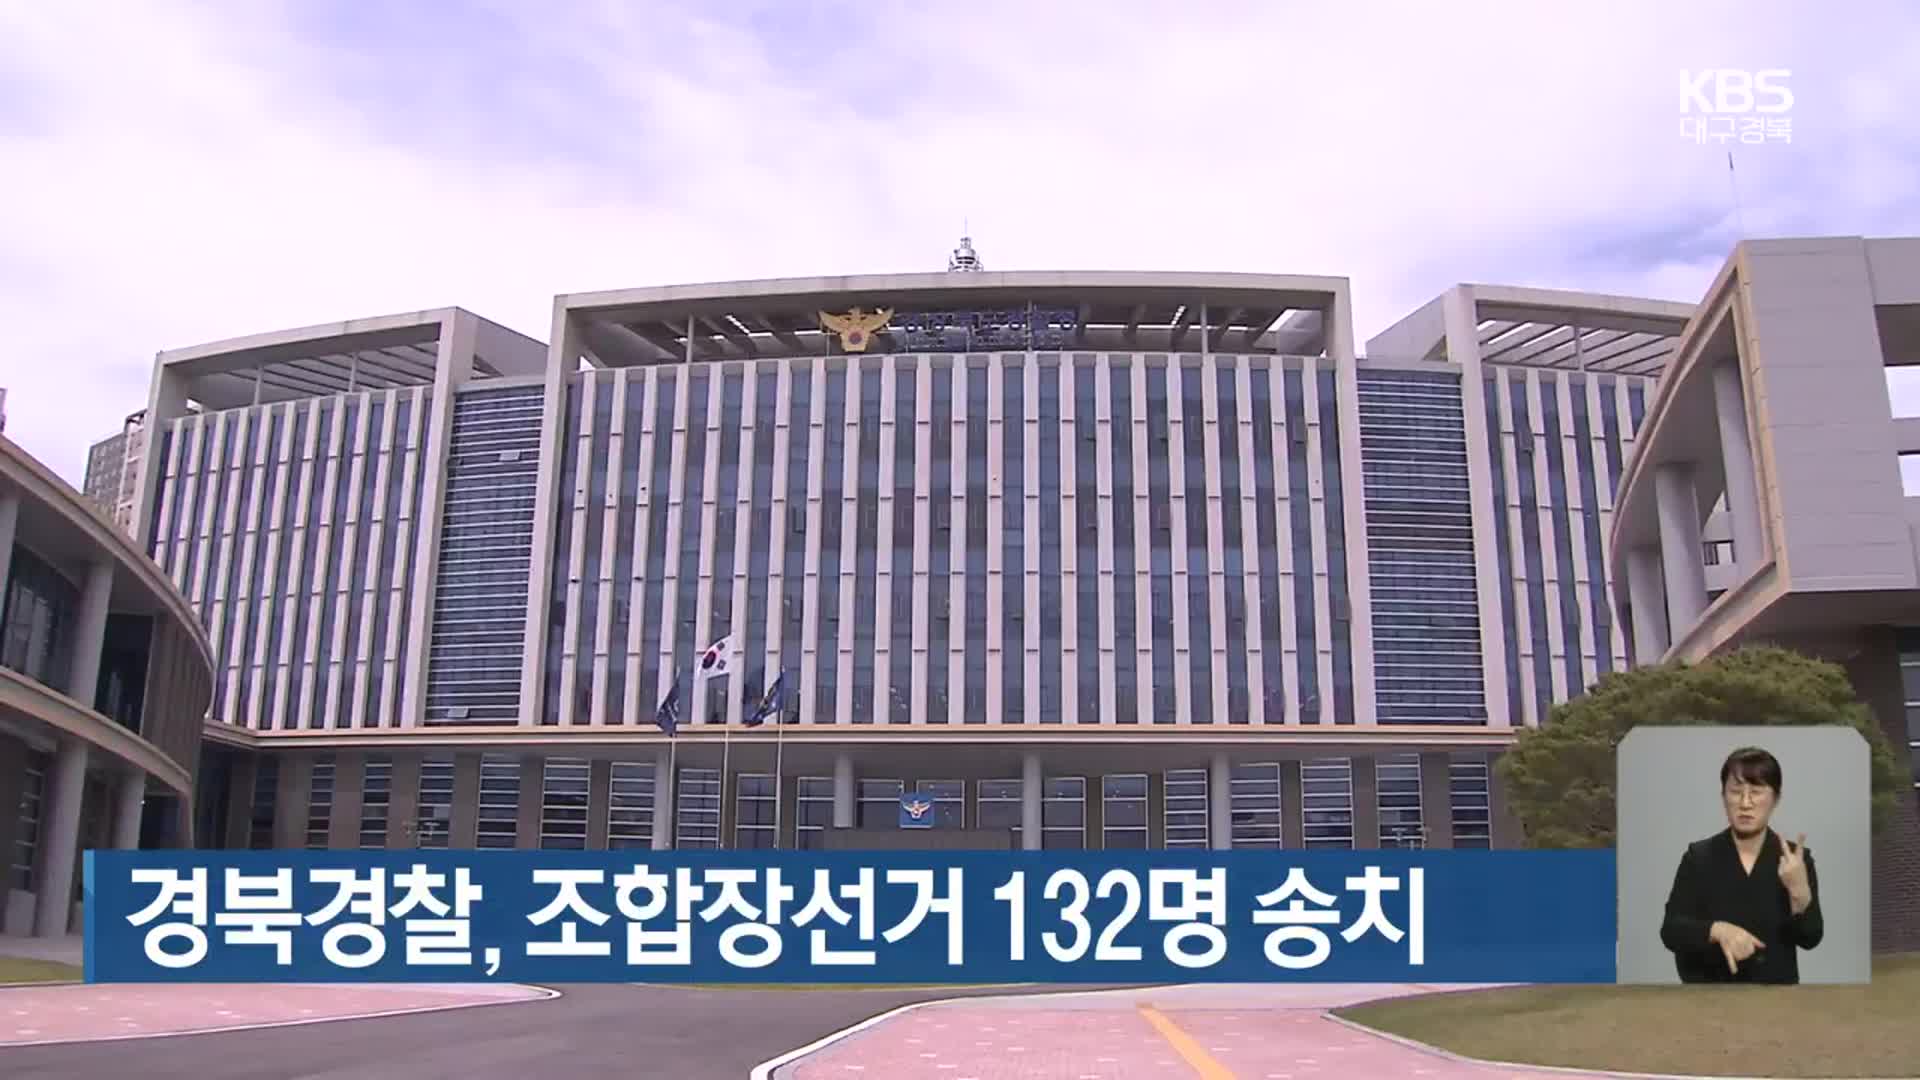 경북경찰, 조합장선거 132명 송치